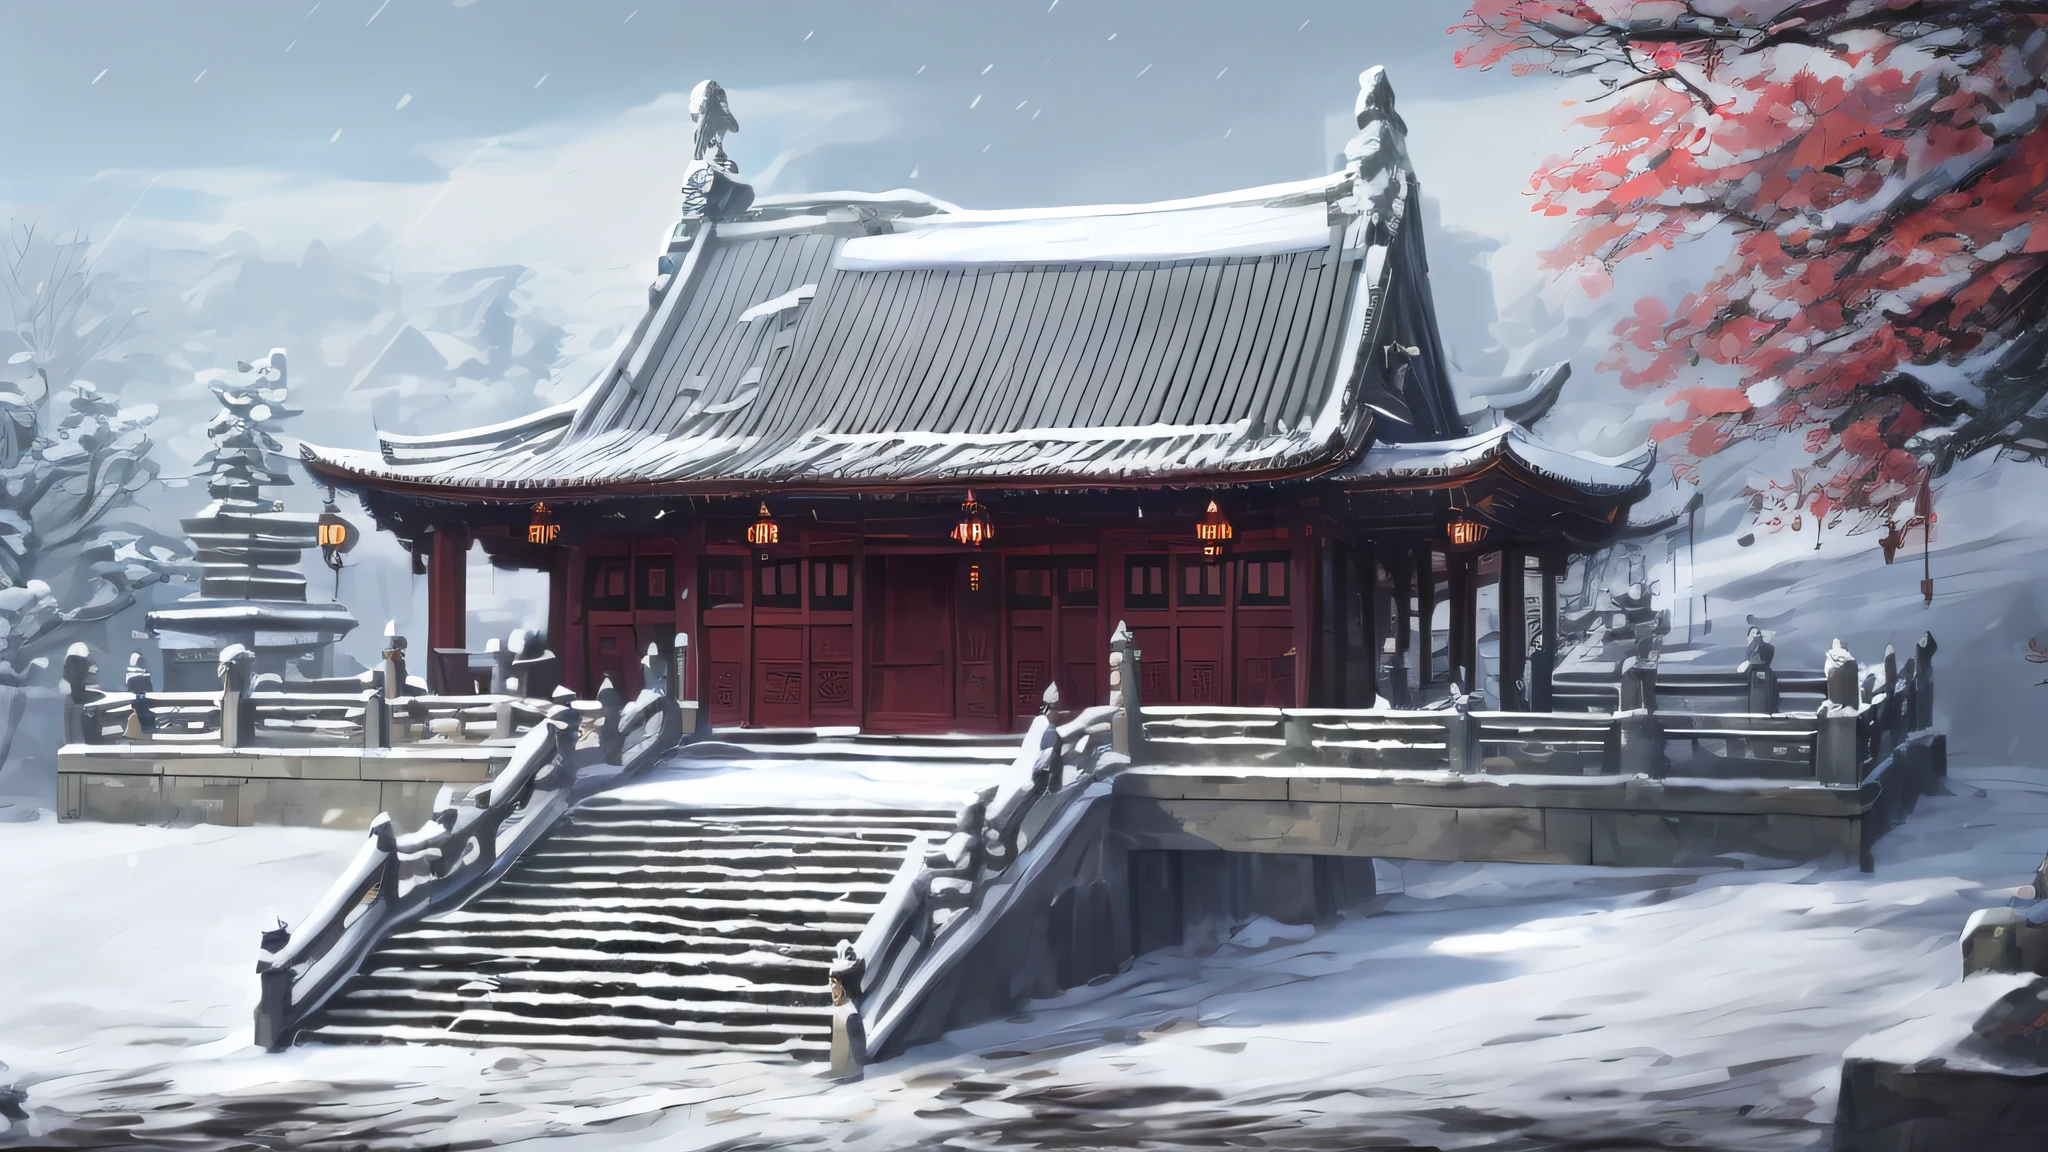 Pilares y escalones de piedra gris.，La cima es nieve，Casa de madera de color marrón rojizo oscuro，Oyuki